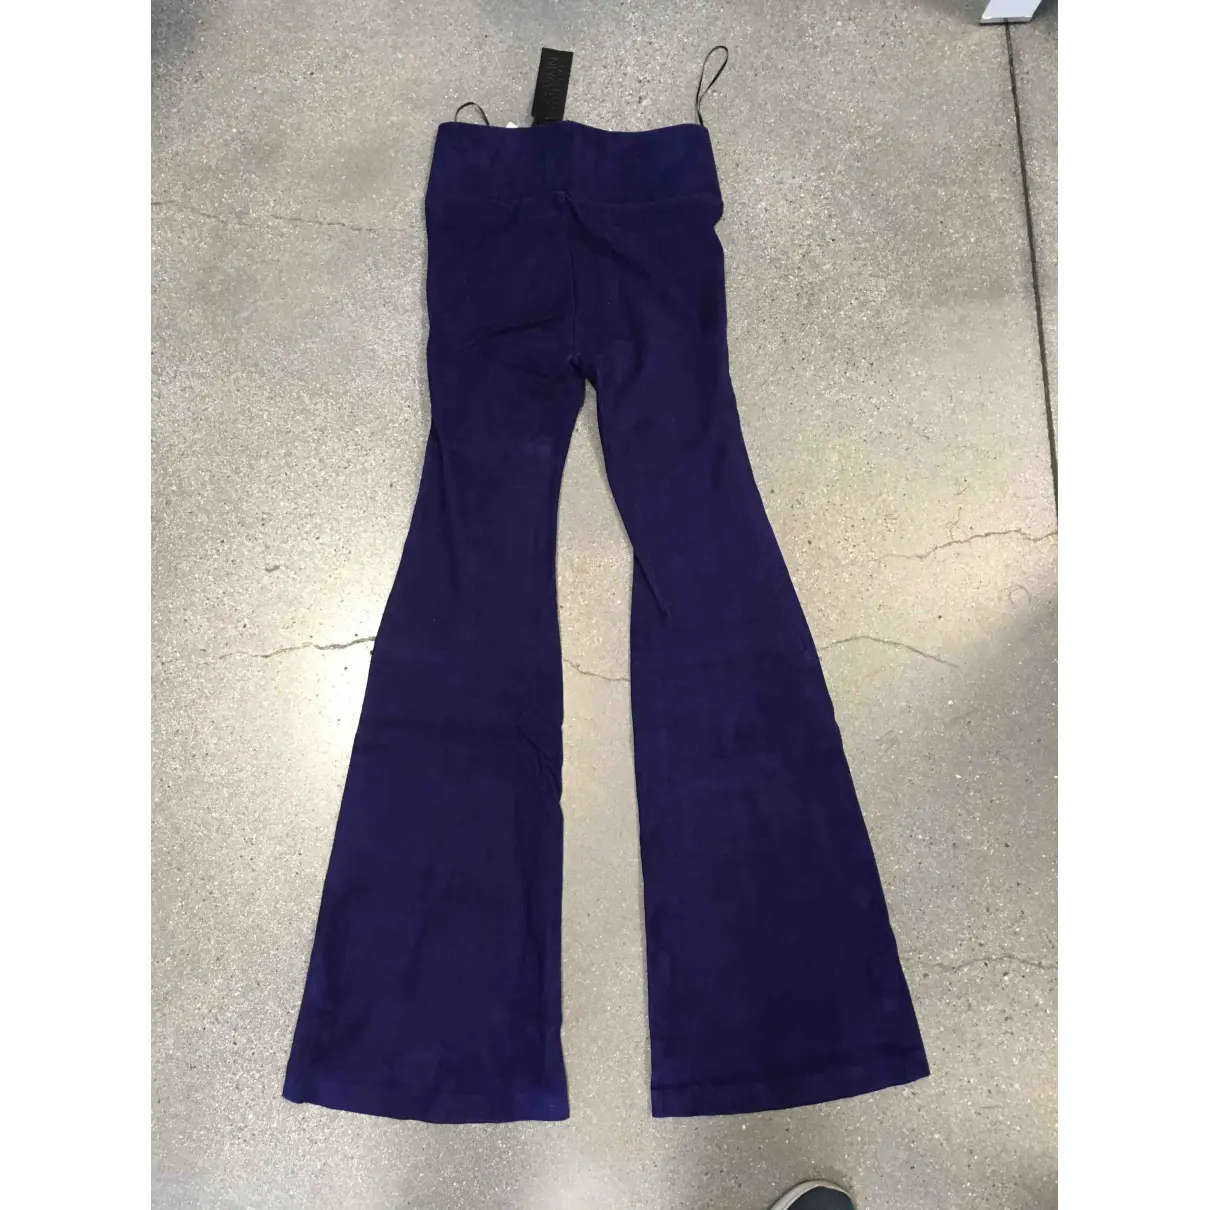 Buy SPRWMN Purple Suede Trousers online